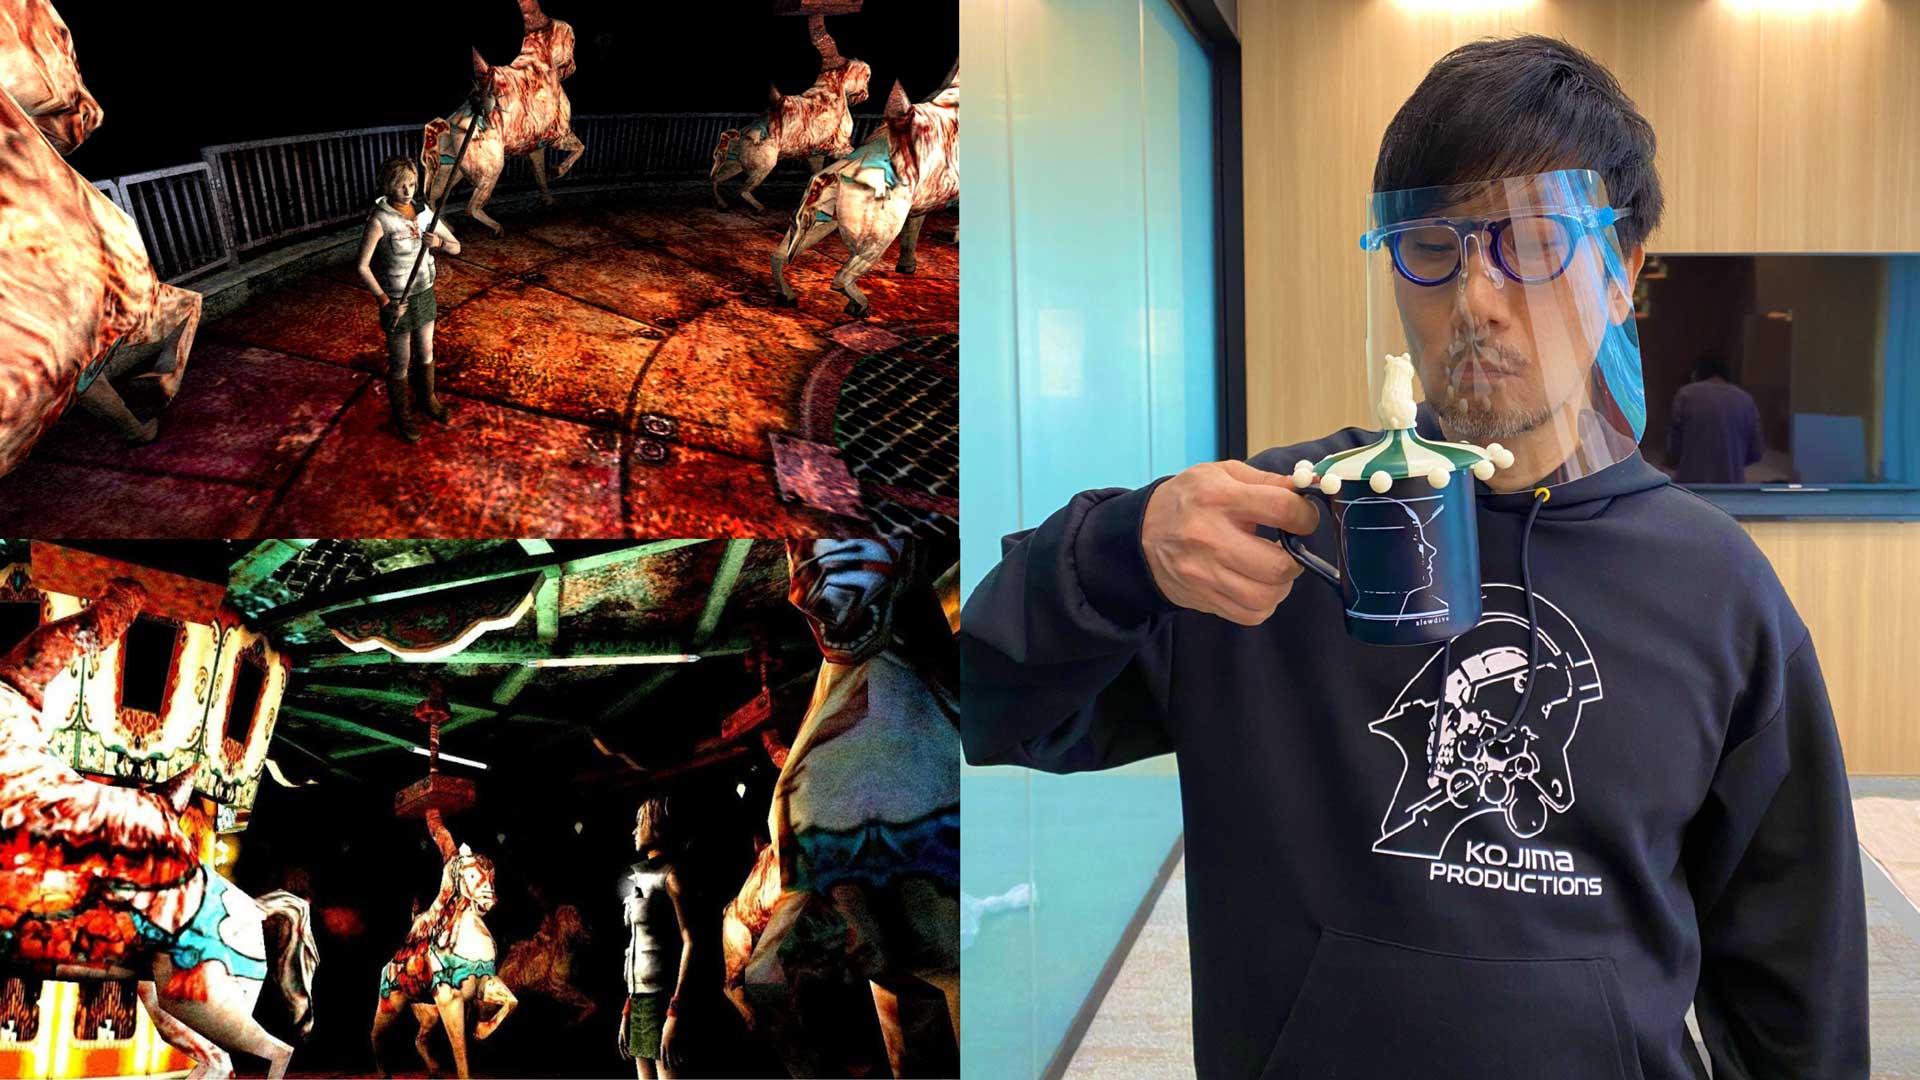 تصویر جدید هیدئو کوجیما در کنار دو تصویر از یک مرحله خاص بازی ترسناک سایلنت هیل ۳ کونامی